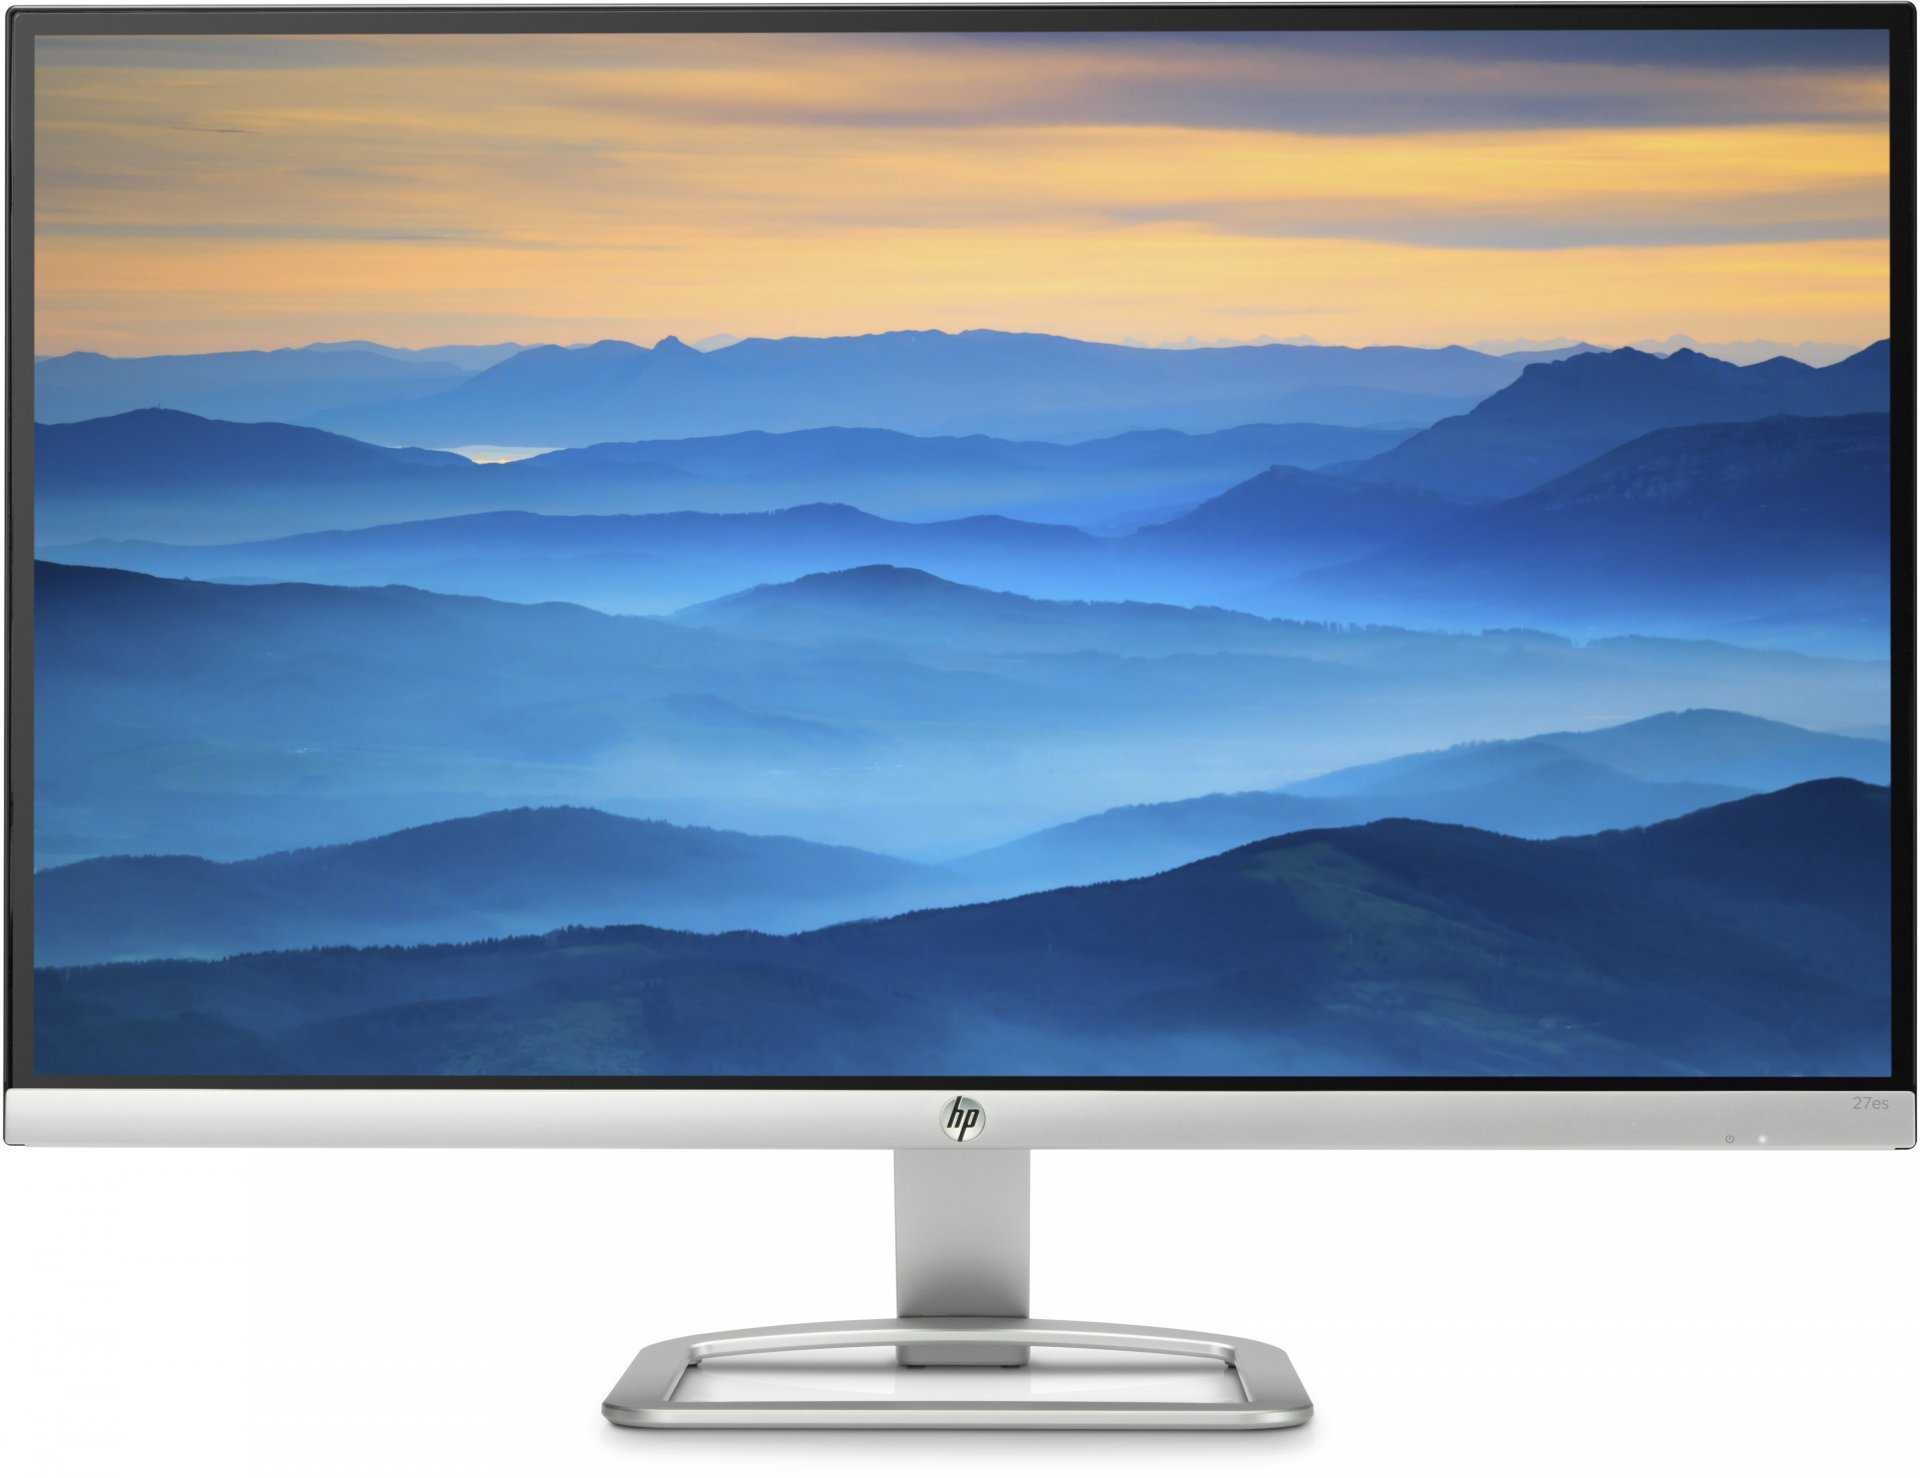 Монитор HP ZR2740w - подробные характеристики обзоры видео фото Цены в интернет-магазинах где можно купить монитор HP ZR2740w